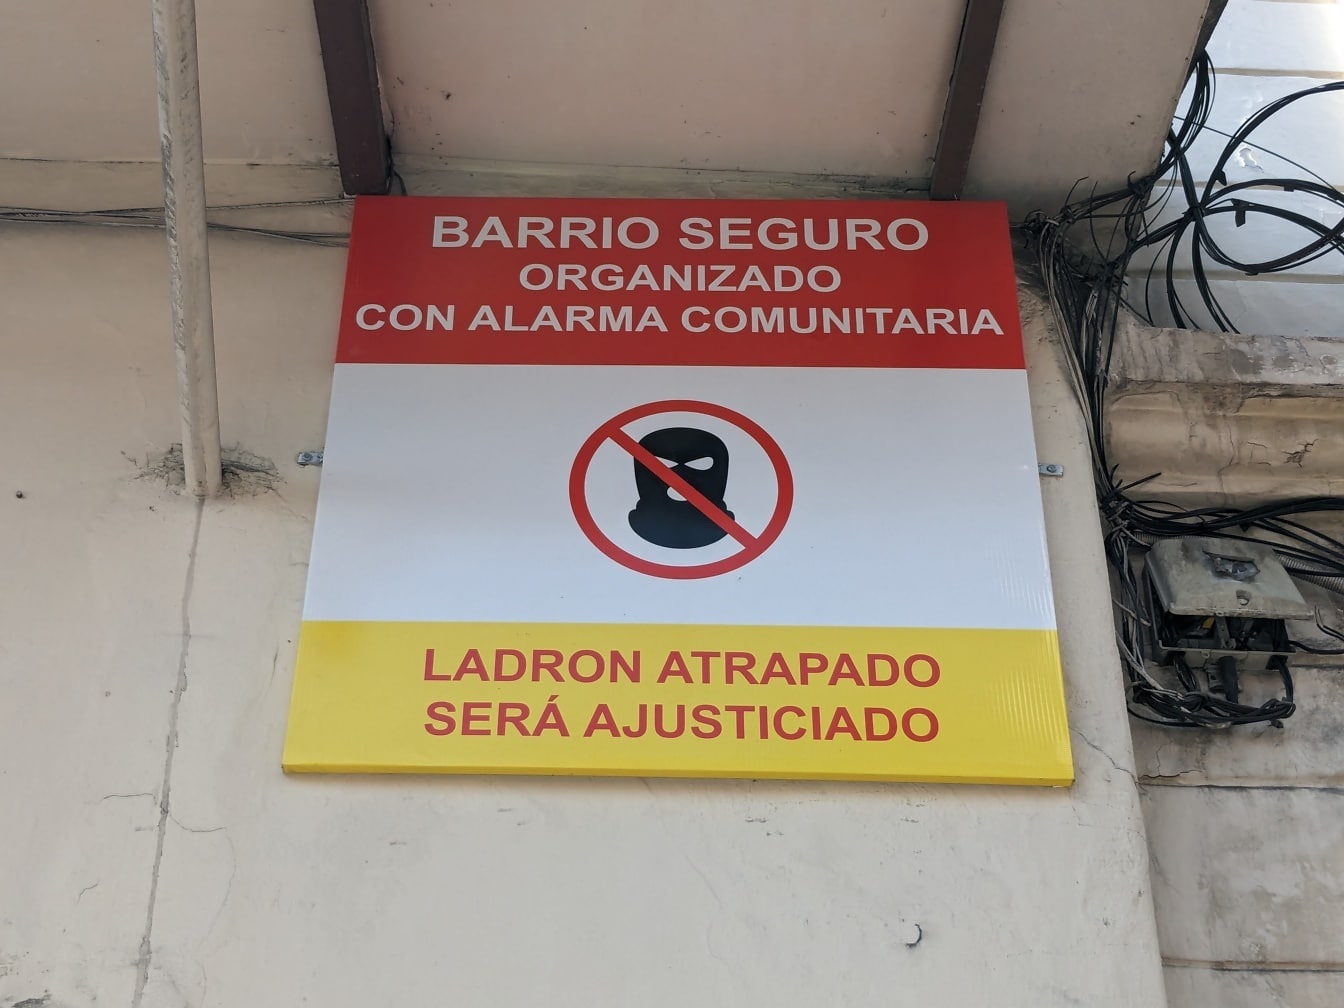 Et skilt mod indbrudstyve og tyve på væggen med inskription på spansk